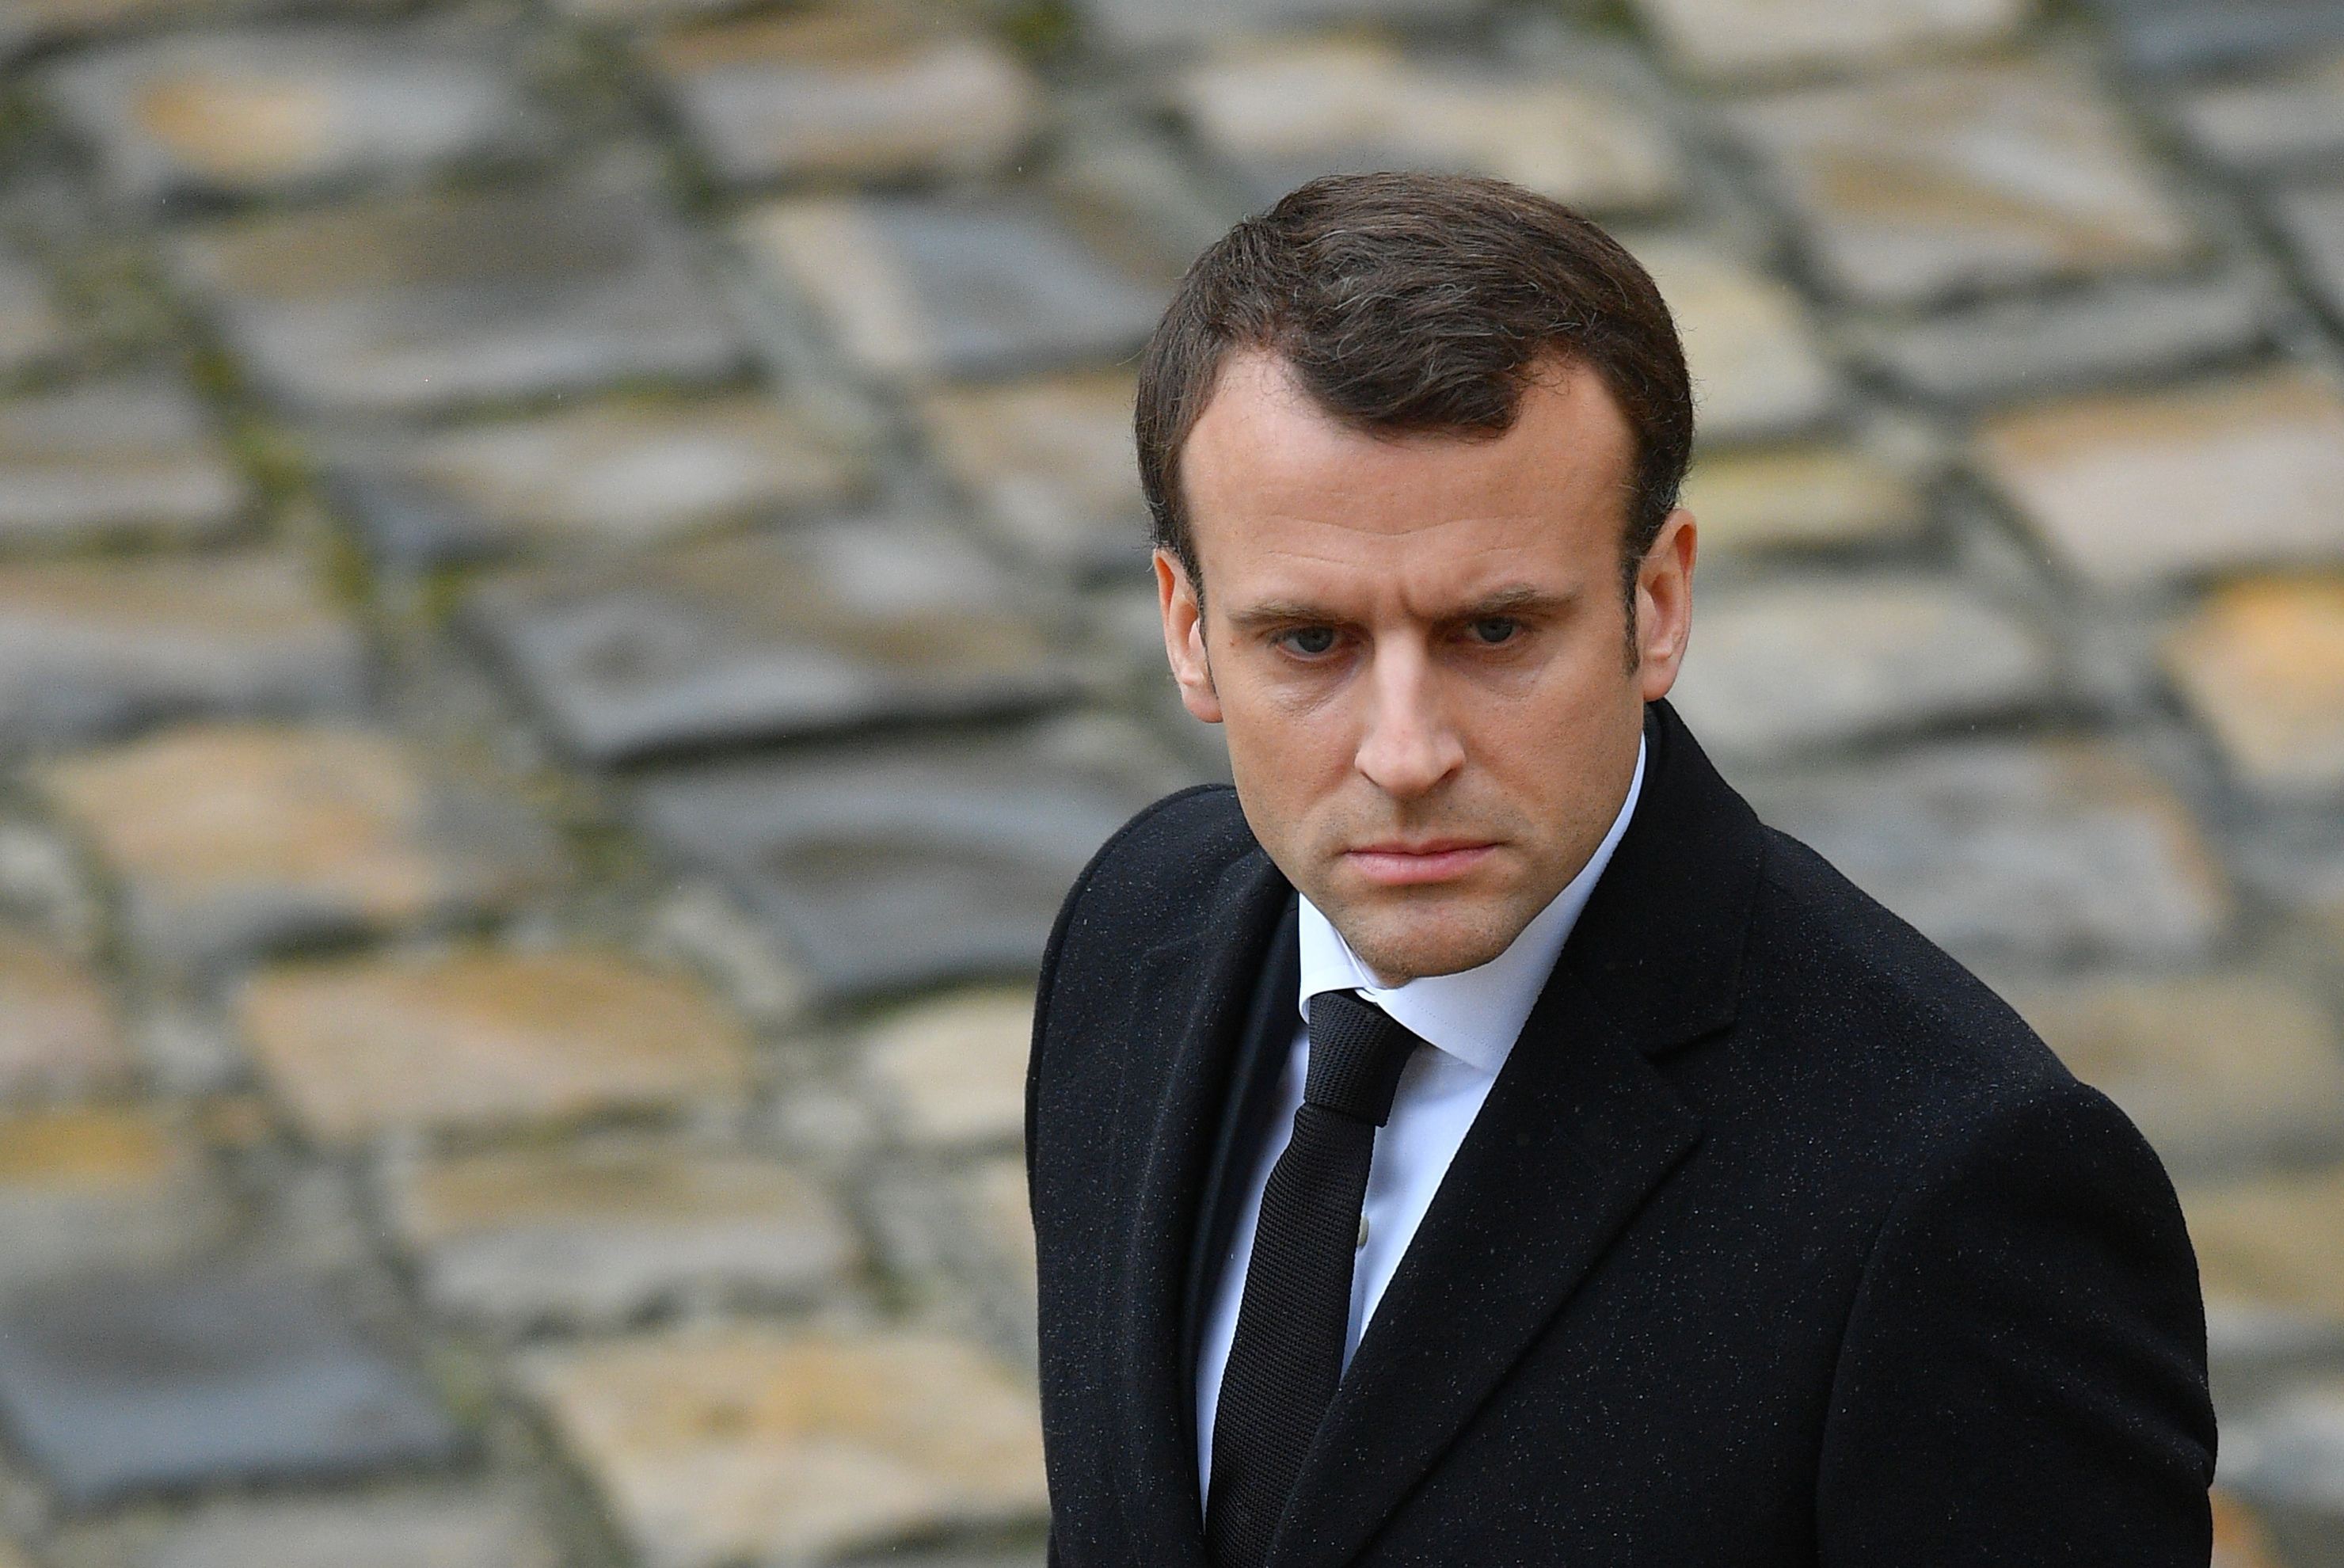 Popularitatea preşedintelui Franţei se află în plină scădere: Planul lui Macron de revitalizare a perspectivelor economice pe termen lung eşuează pe măsură ce guvernul îşi reduce perspectivele de creştere economică